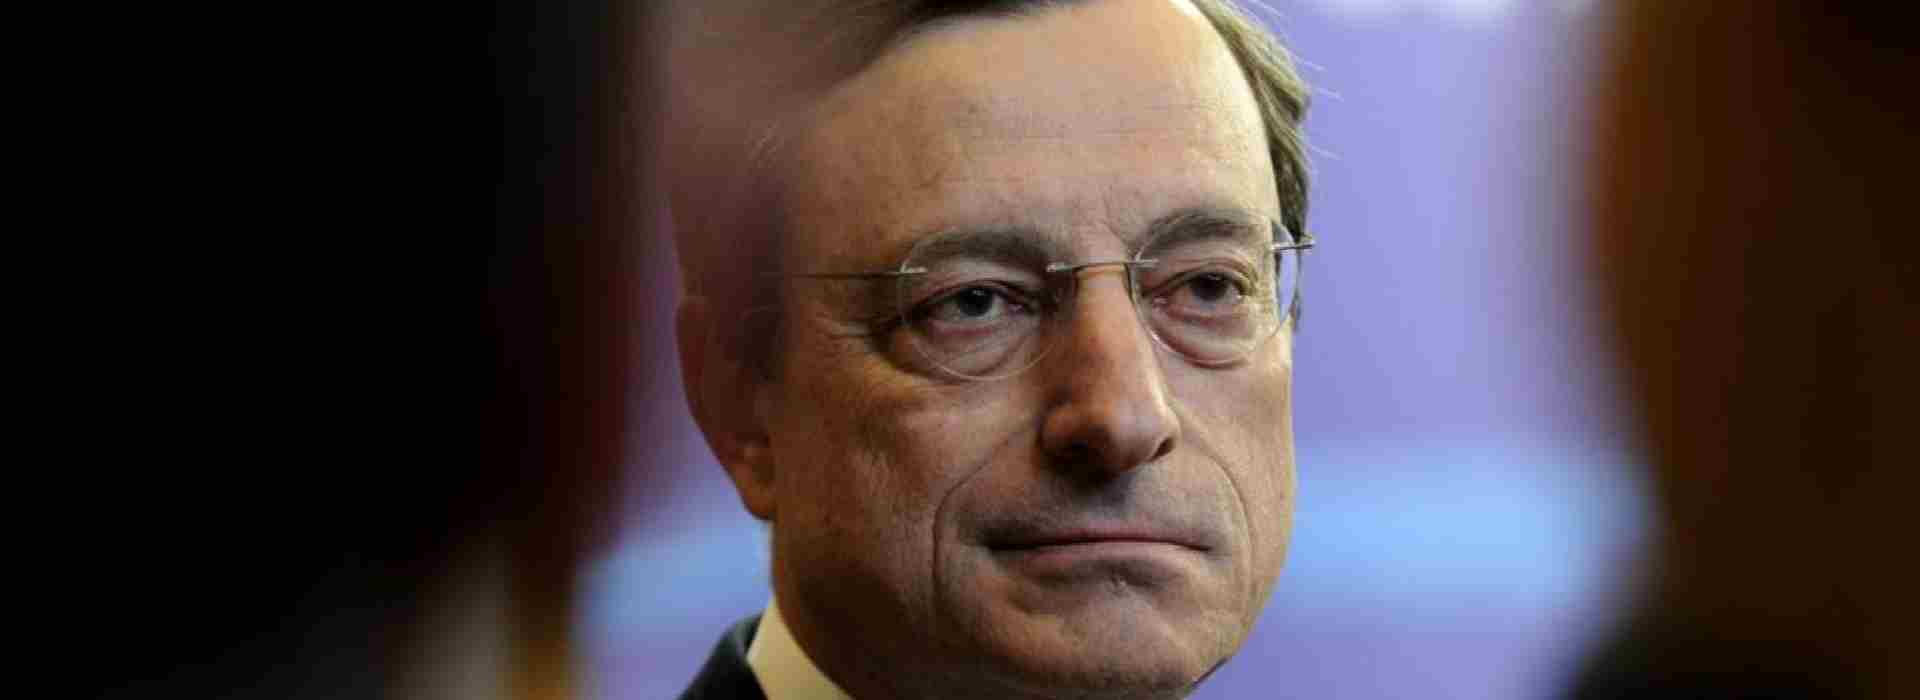 Il nuovo governo di Mario Draghi: Economia, Interni e Giustizia a tecnici. E non pare cosa buona e giusta